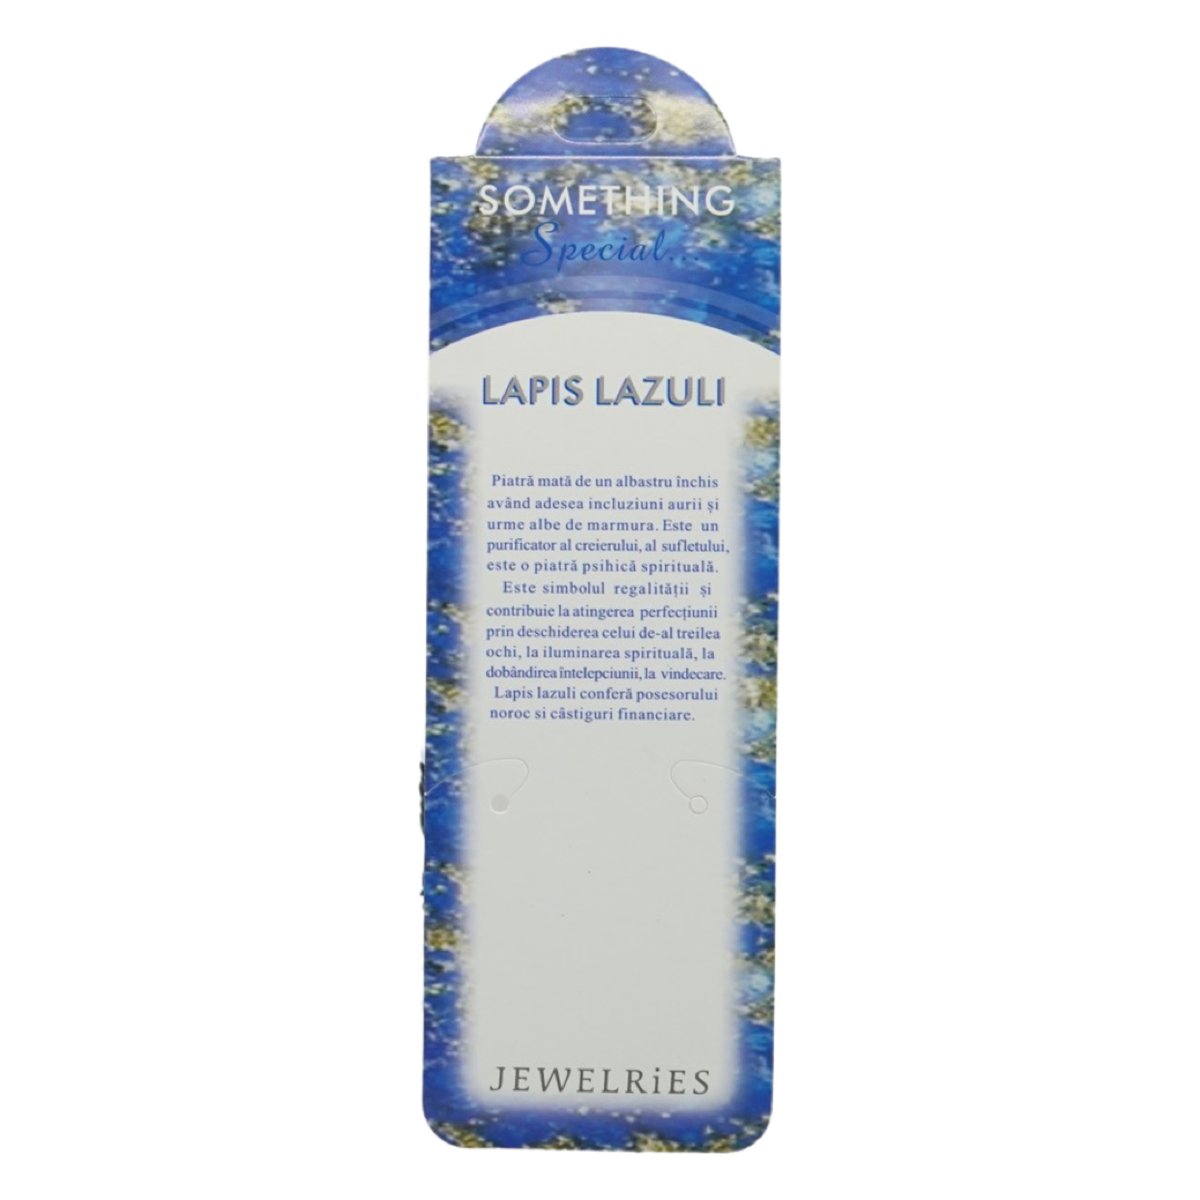 Cartonas cu informatii despre lapis lazuli 19cm